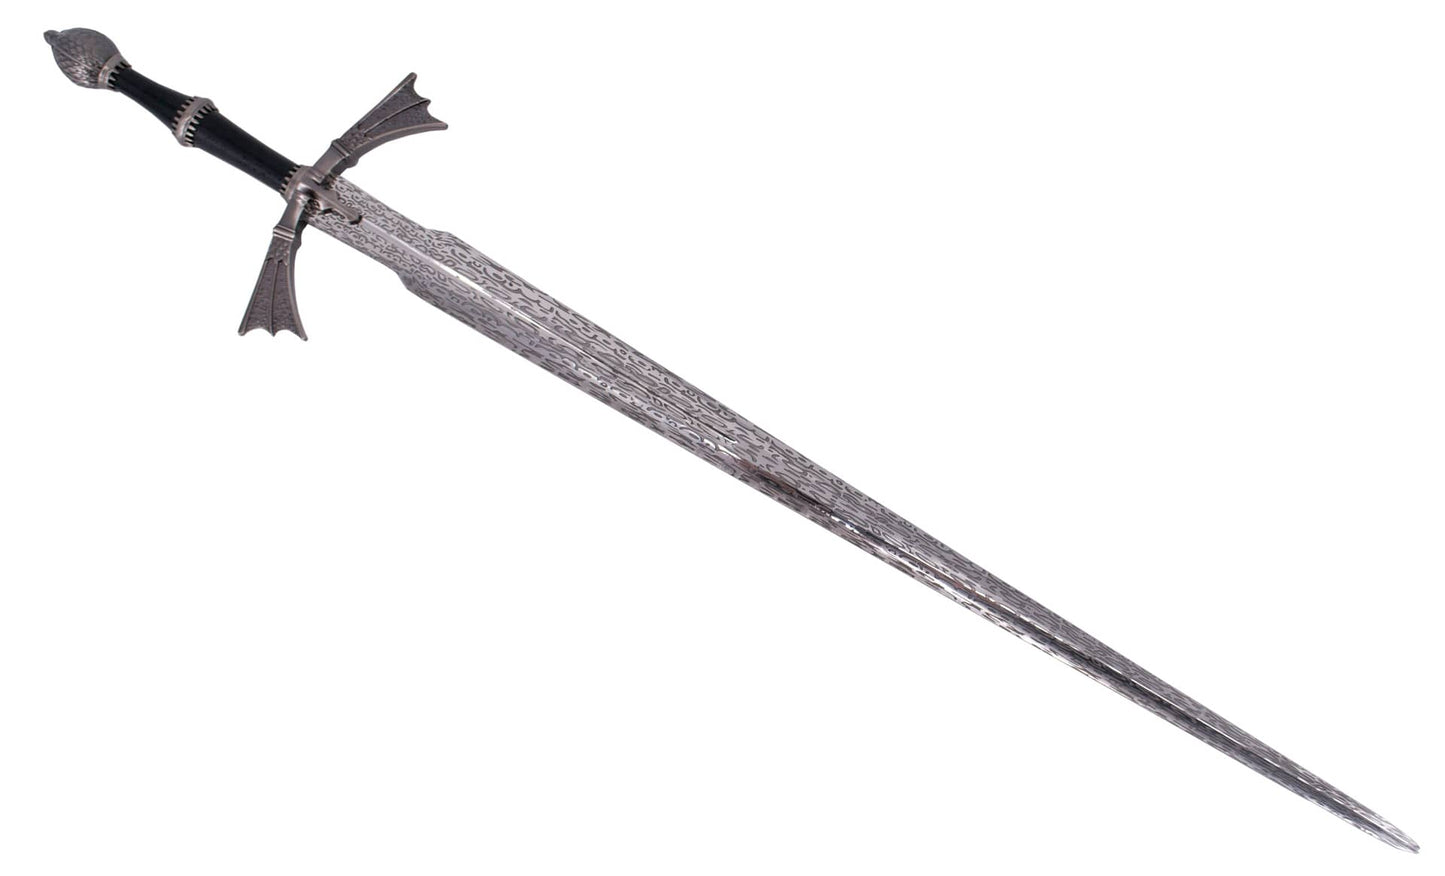 Espada de fantasía "Hermana Oscura" de Daemon Targaryen de "House of the Dragon", La Casa del Dragón. Vendida por Espadas y más